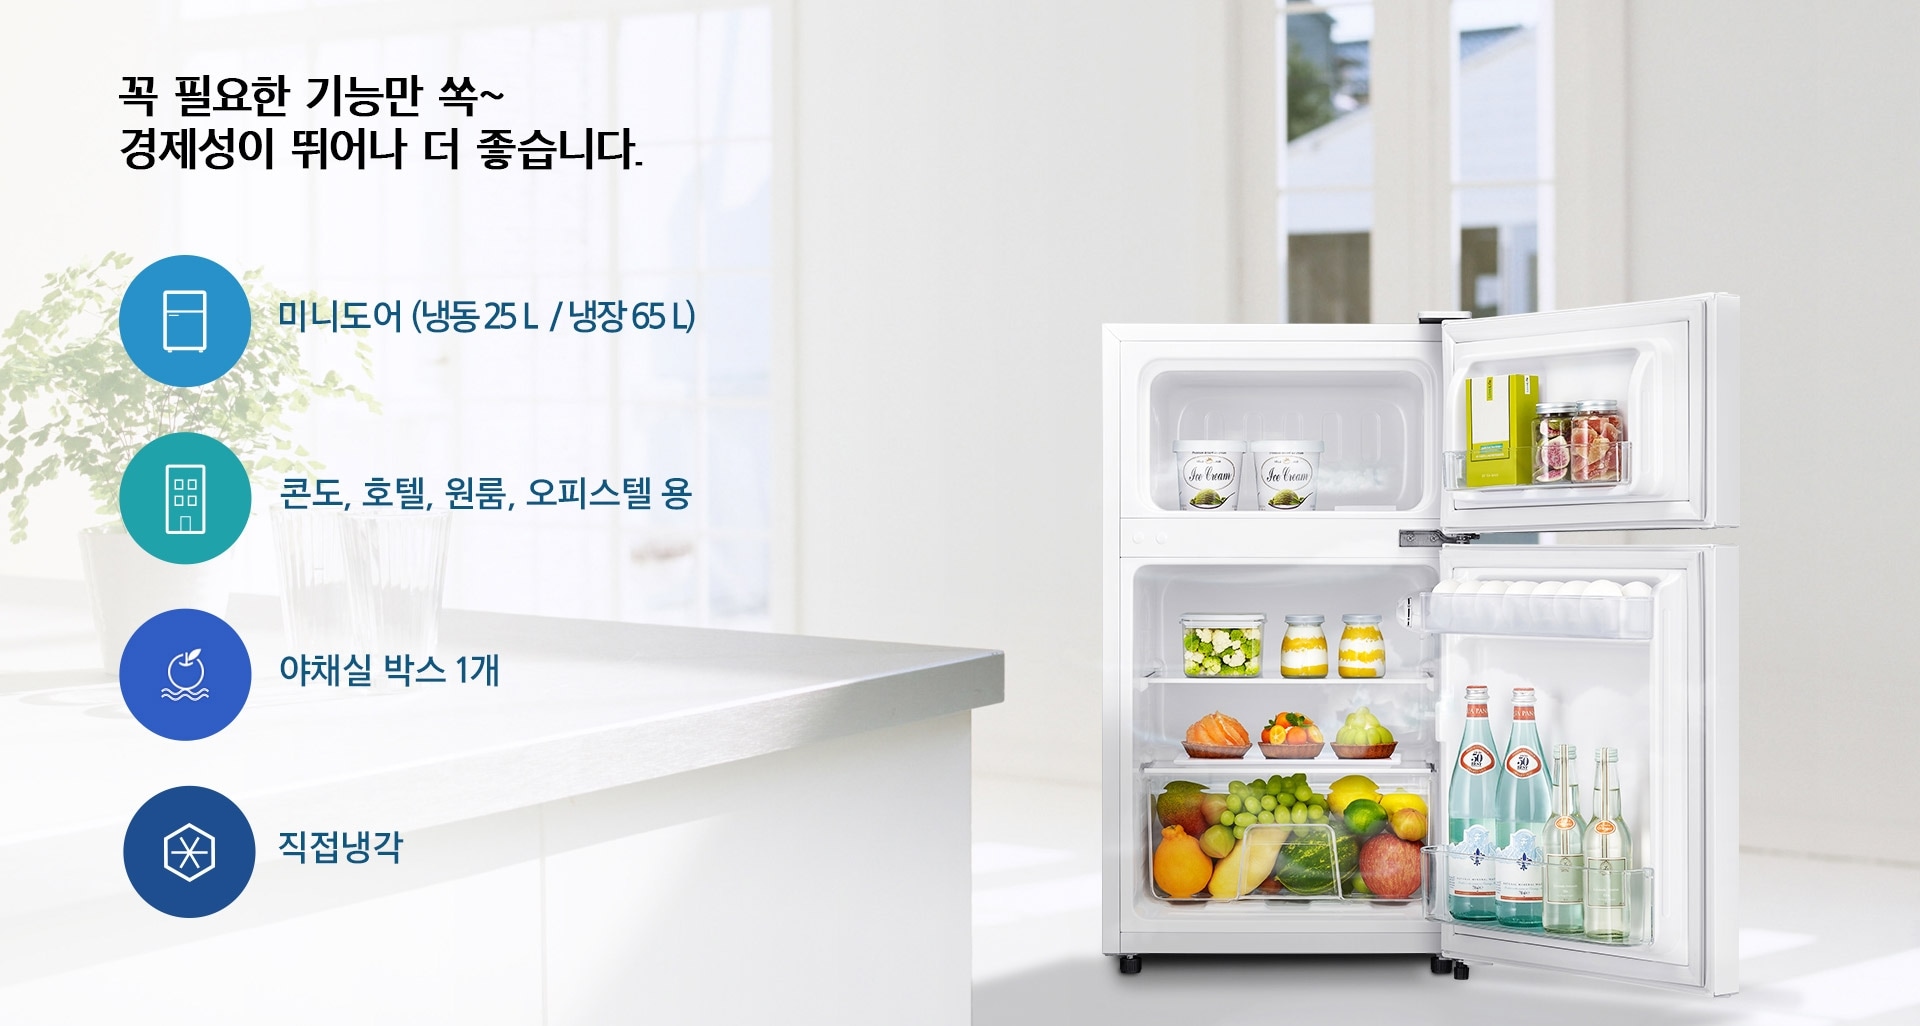 주방을 배경으로 한 쪽에 소형 냉장고가 문이 열린 채 놓여져 있습니다. 좌측에는 4가지 아이콘으로 제품의 특징을 표현하고 있습니다. 
1.미니도어(냉동 25 L/냉장 65 L), 2.콘도,호텔,원룸,오피스텔 용, 3.야채실 박스 1개, 4. 직접냉각